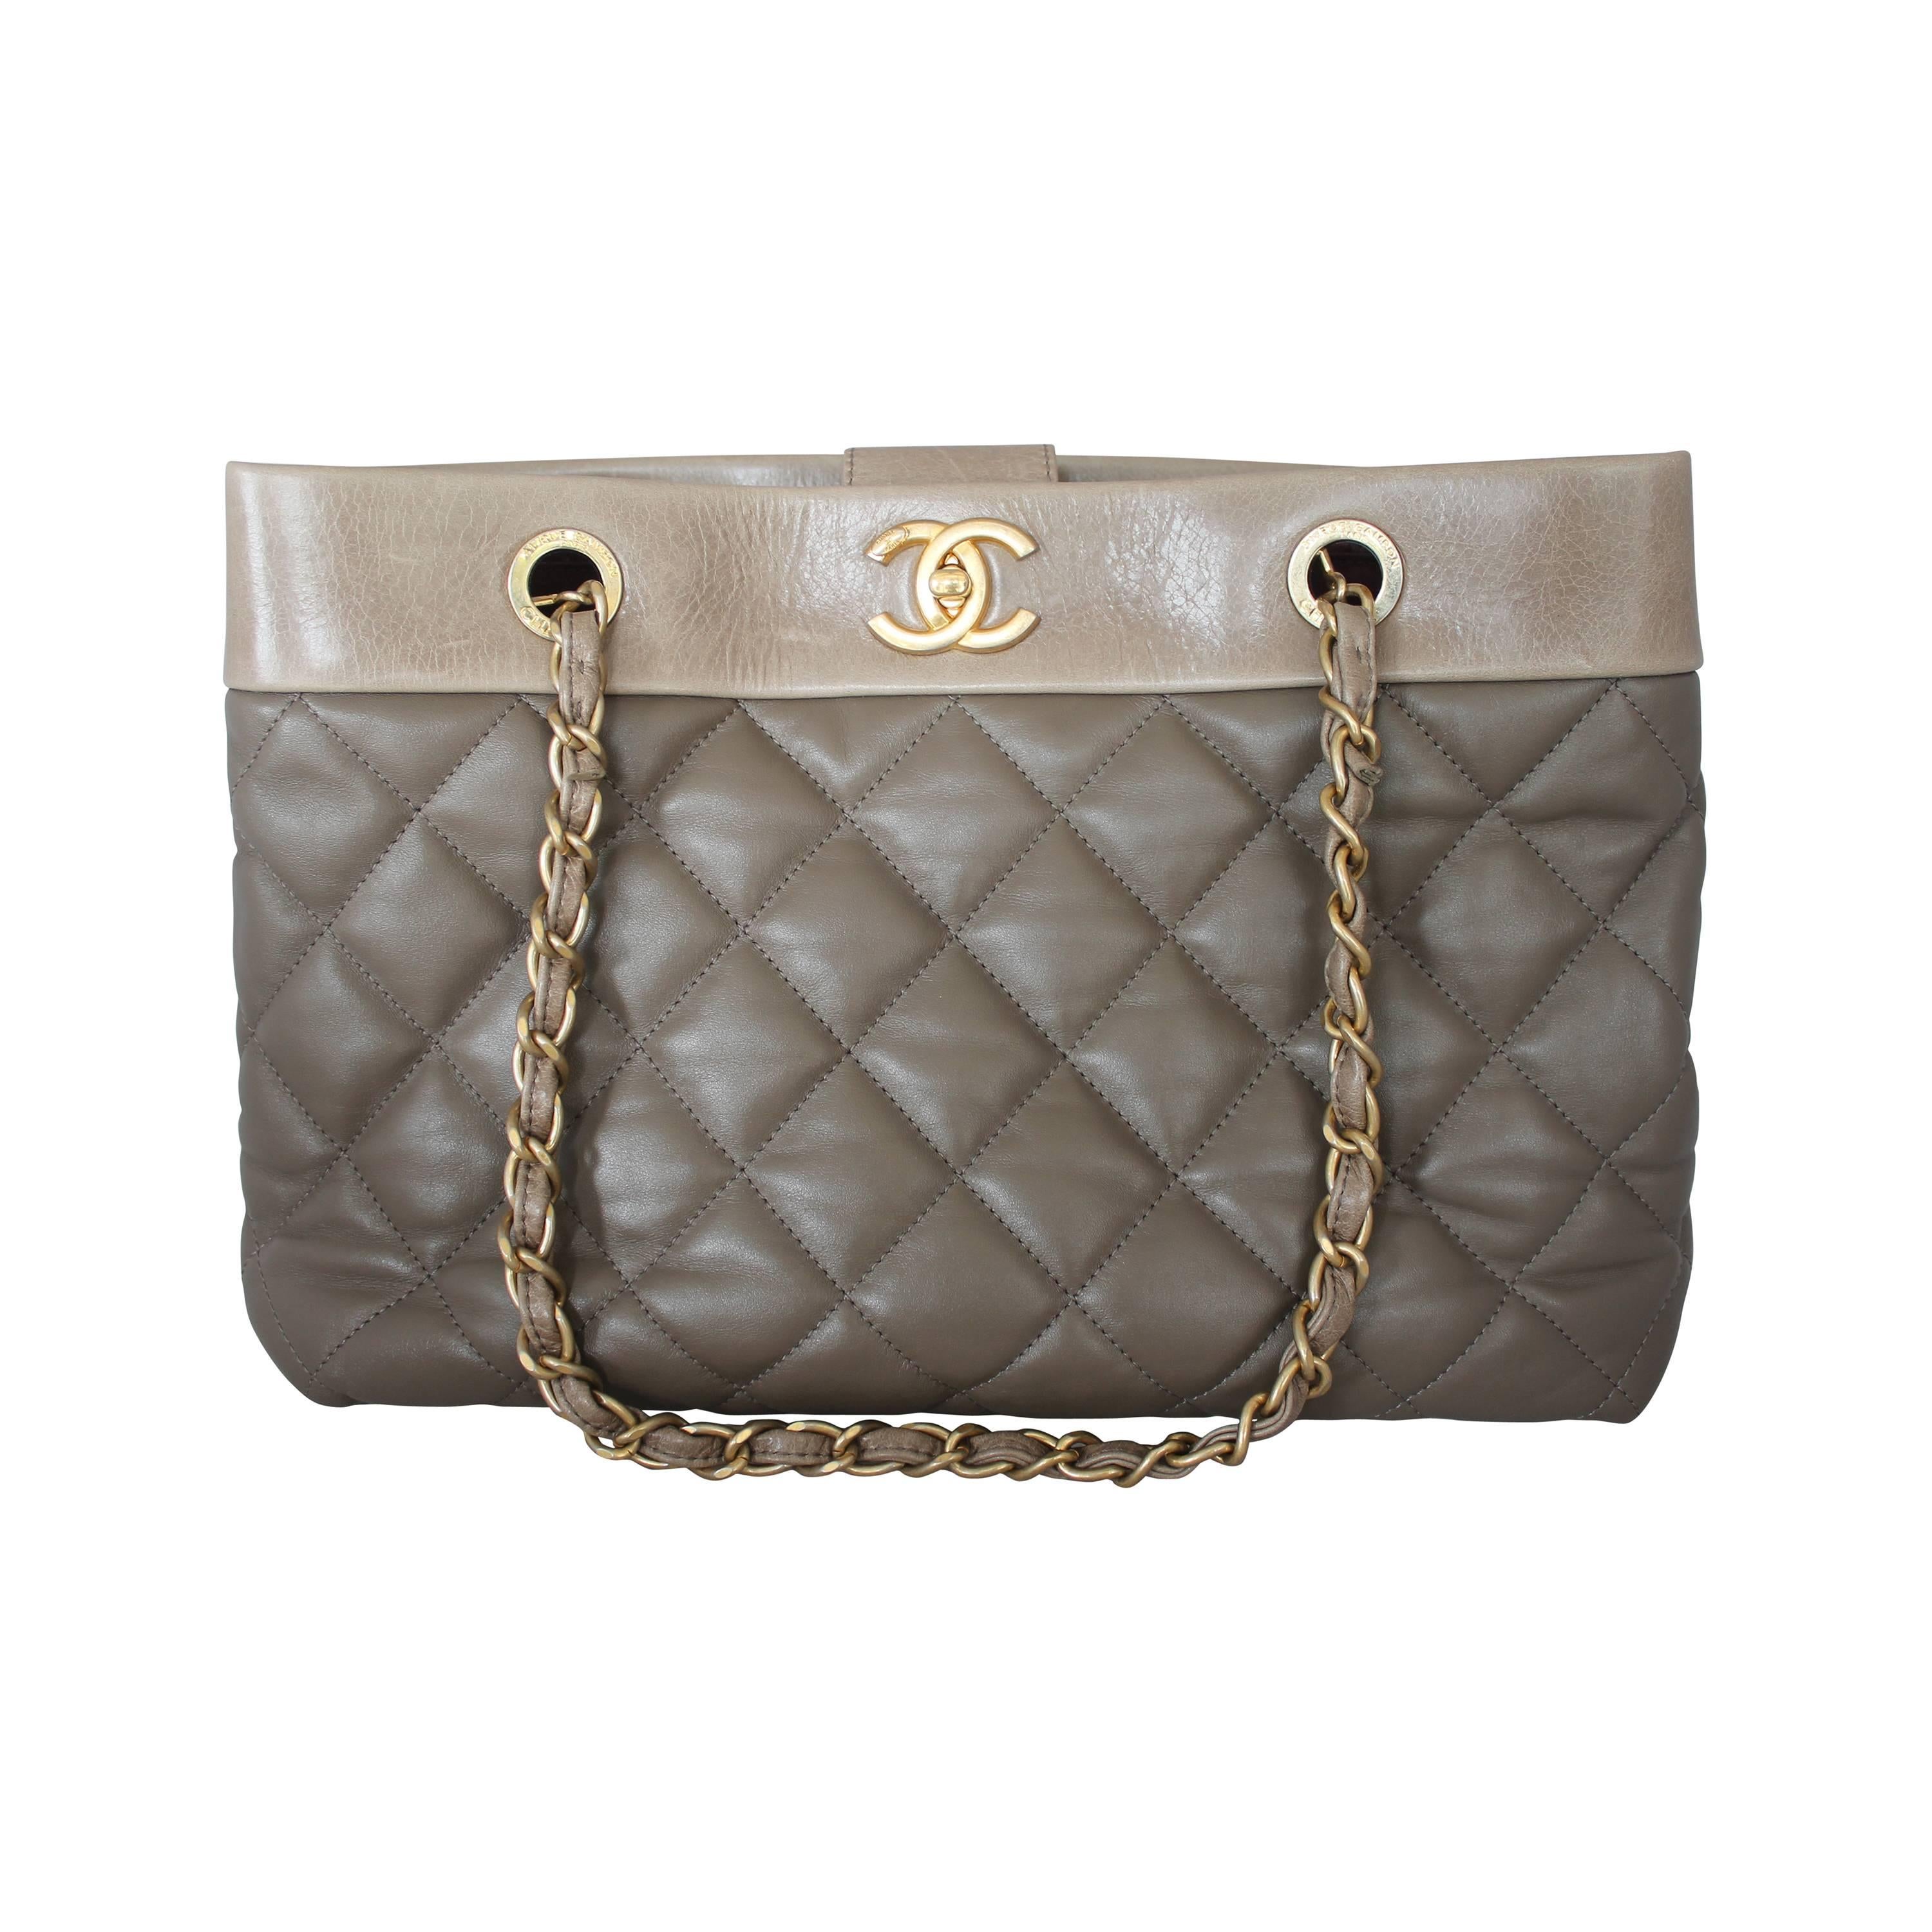 Chanel 2013 Taupe Soft Elegance Tote Shoulder Bag - GHW